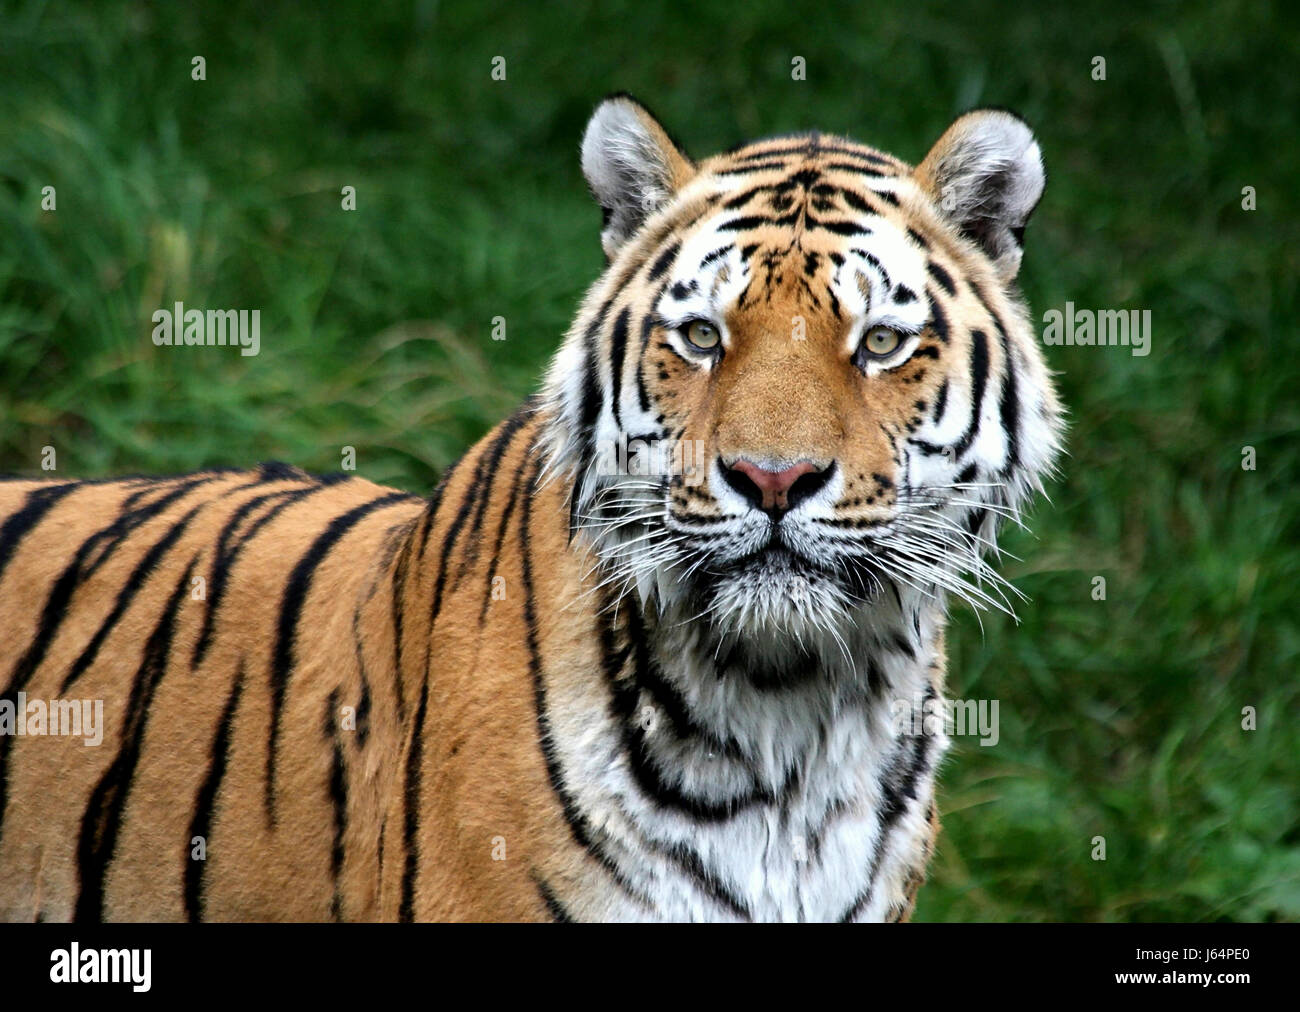 Säugetier Raubkatze Raubkatze Katze Tiger Look mit einem Blick sehen, spähen Sie blickt Stockfoto